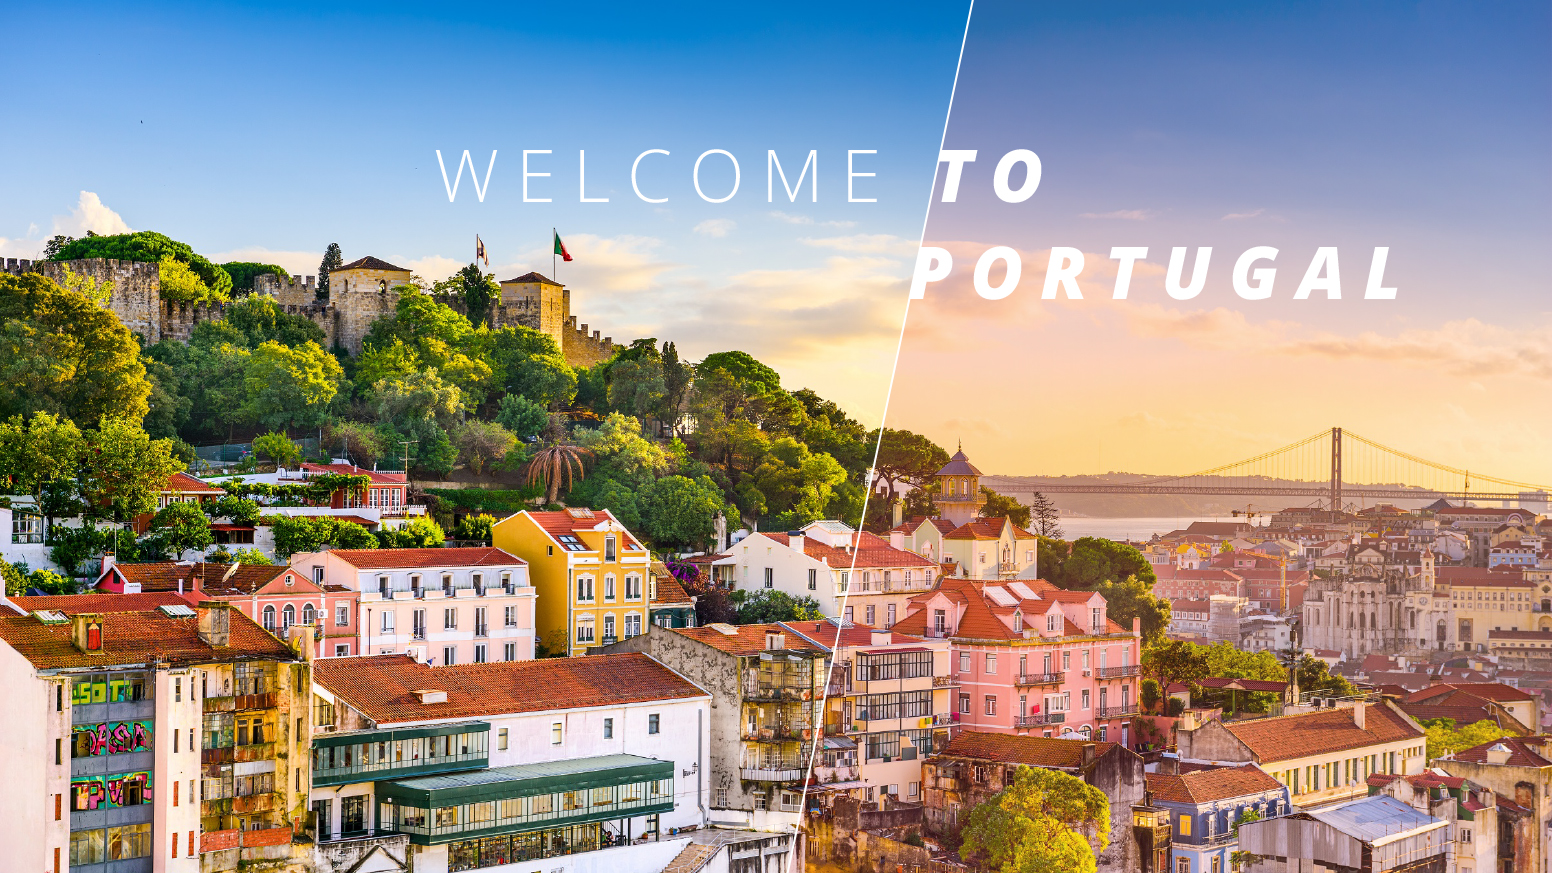 Nằm trên bờ biển phía tây của Bán đảo Iberia nhìn ra Đại Tây Dương, lịch sử các thành phố của Bồ Đào Nha từ lâu đã gắn liền với vùng biển bao quanh